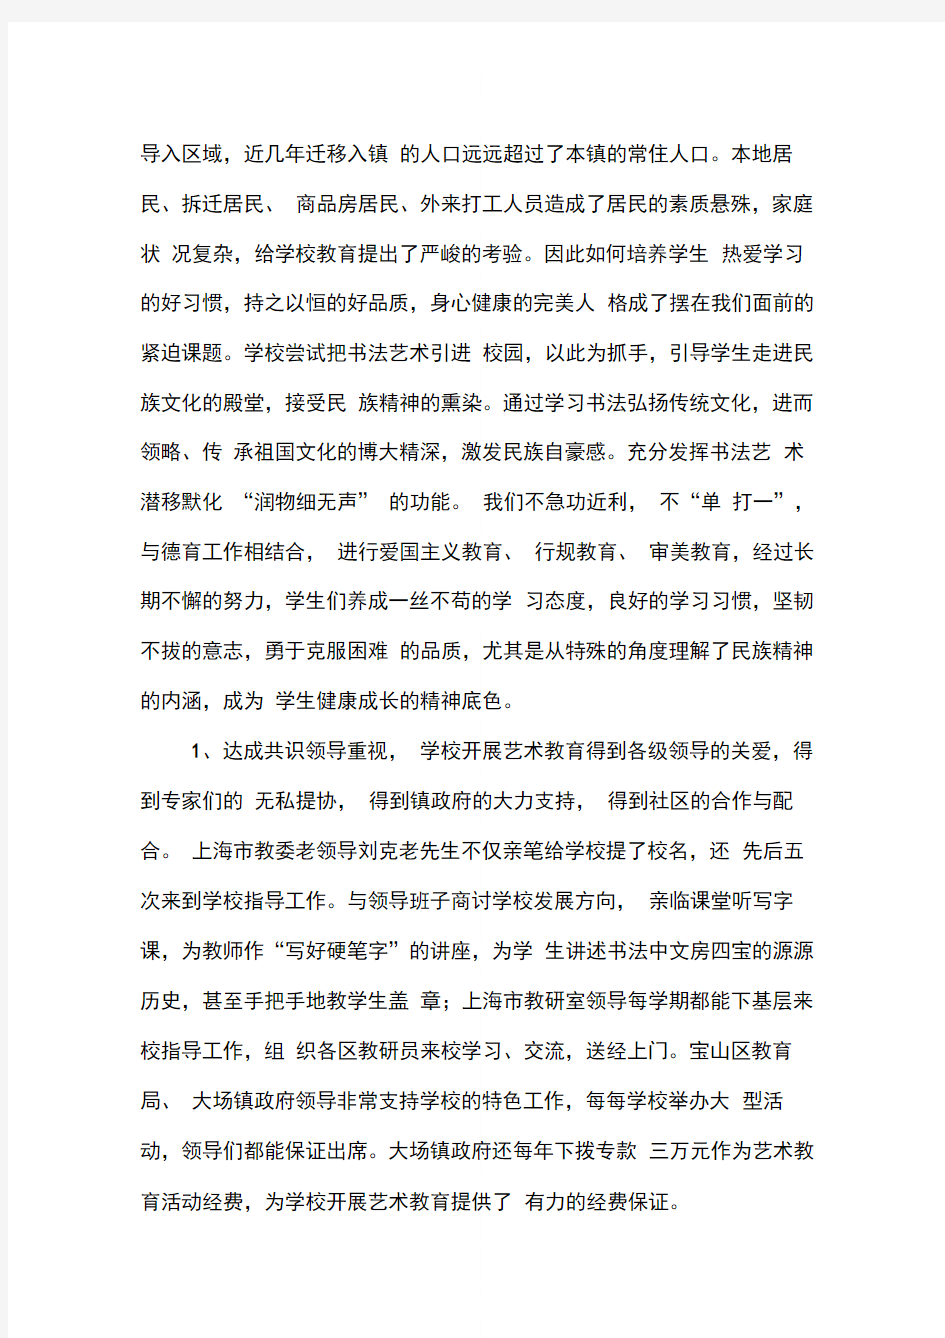 大场中心小学申报“上海市艺术教育特色学校”自查报告